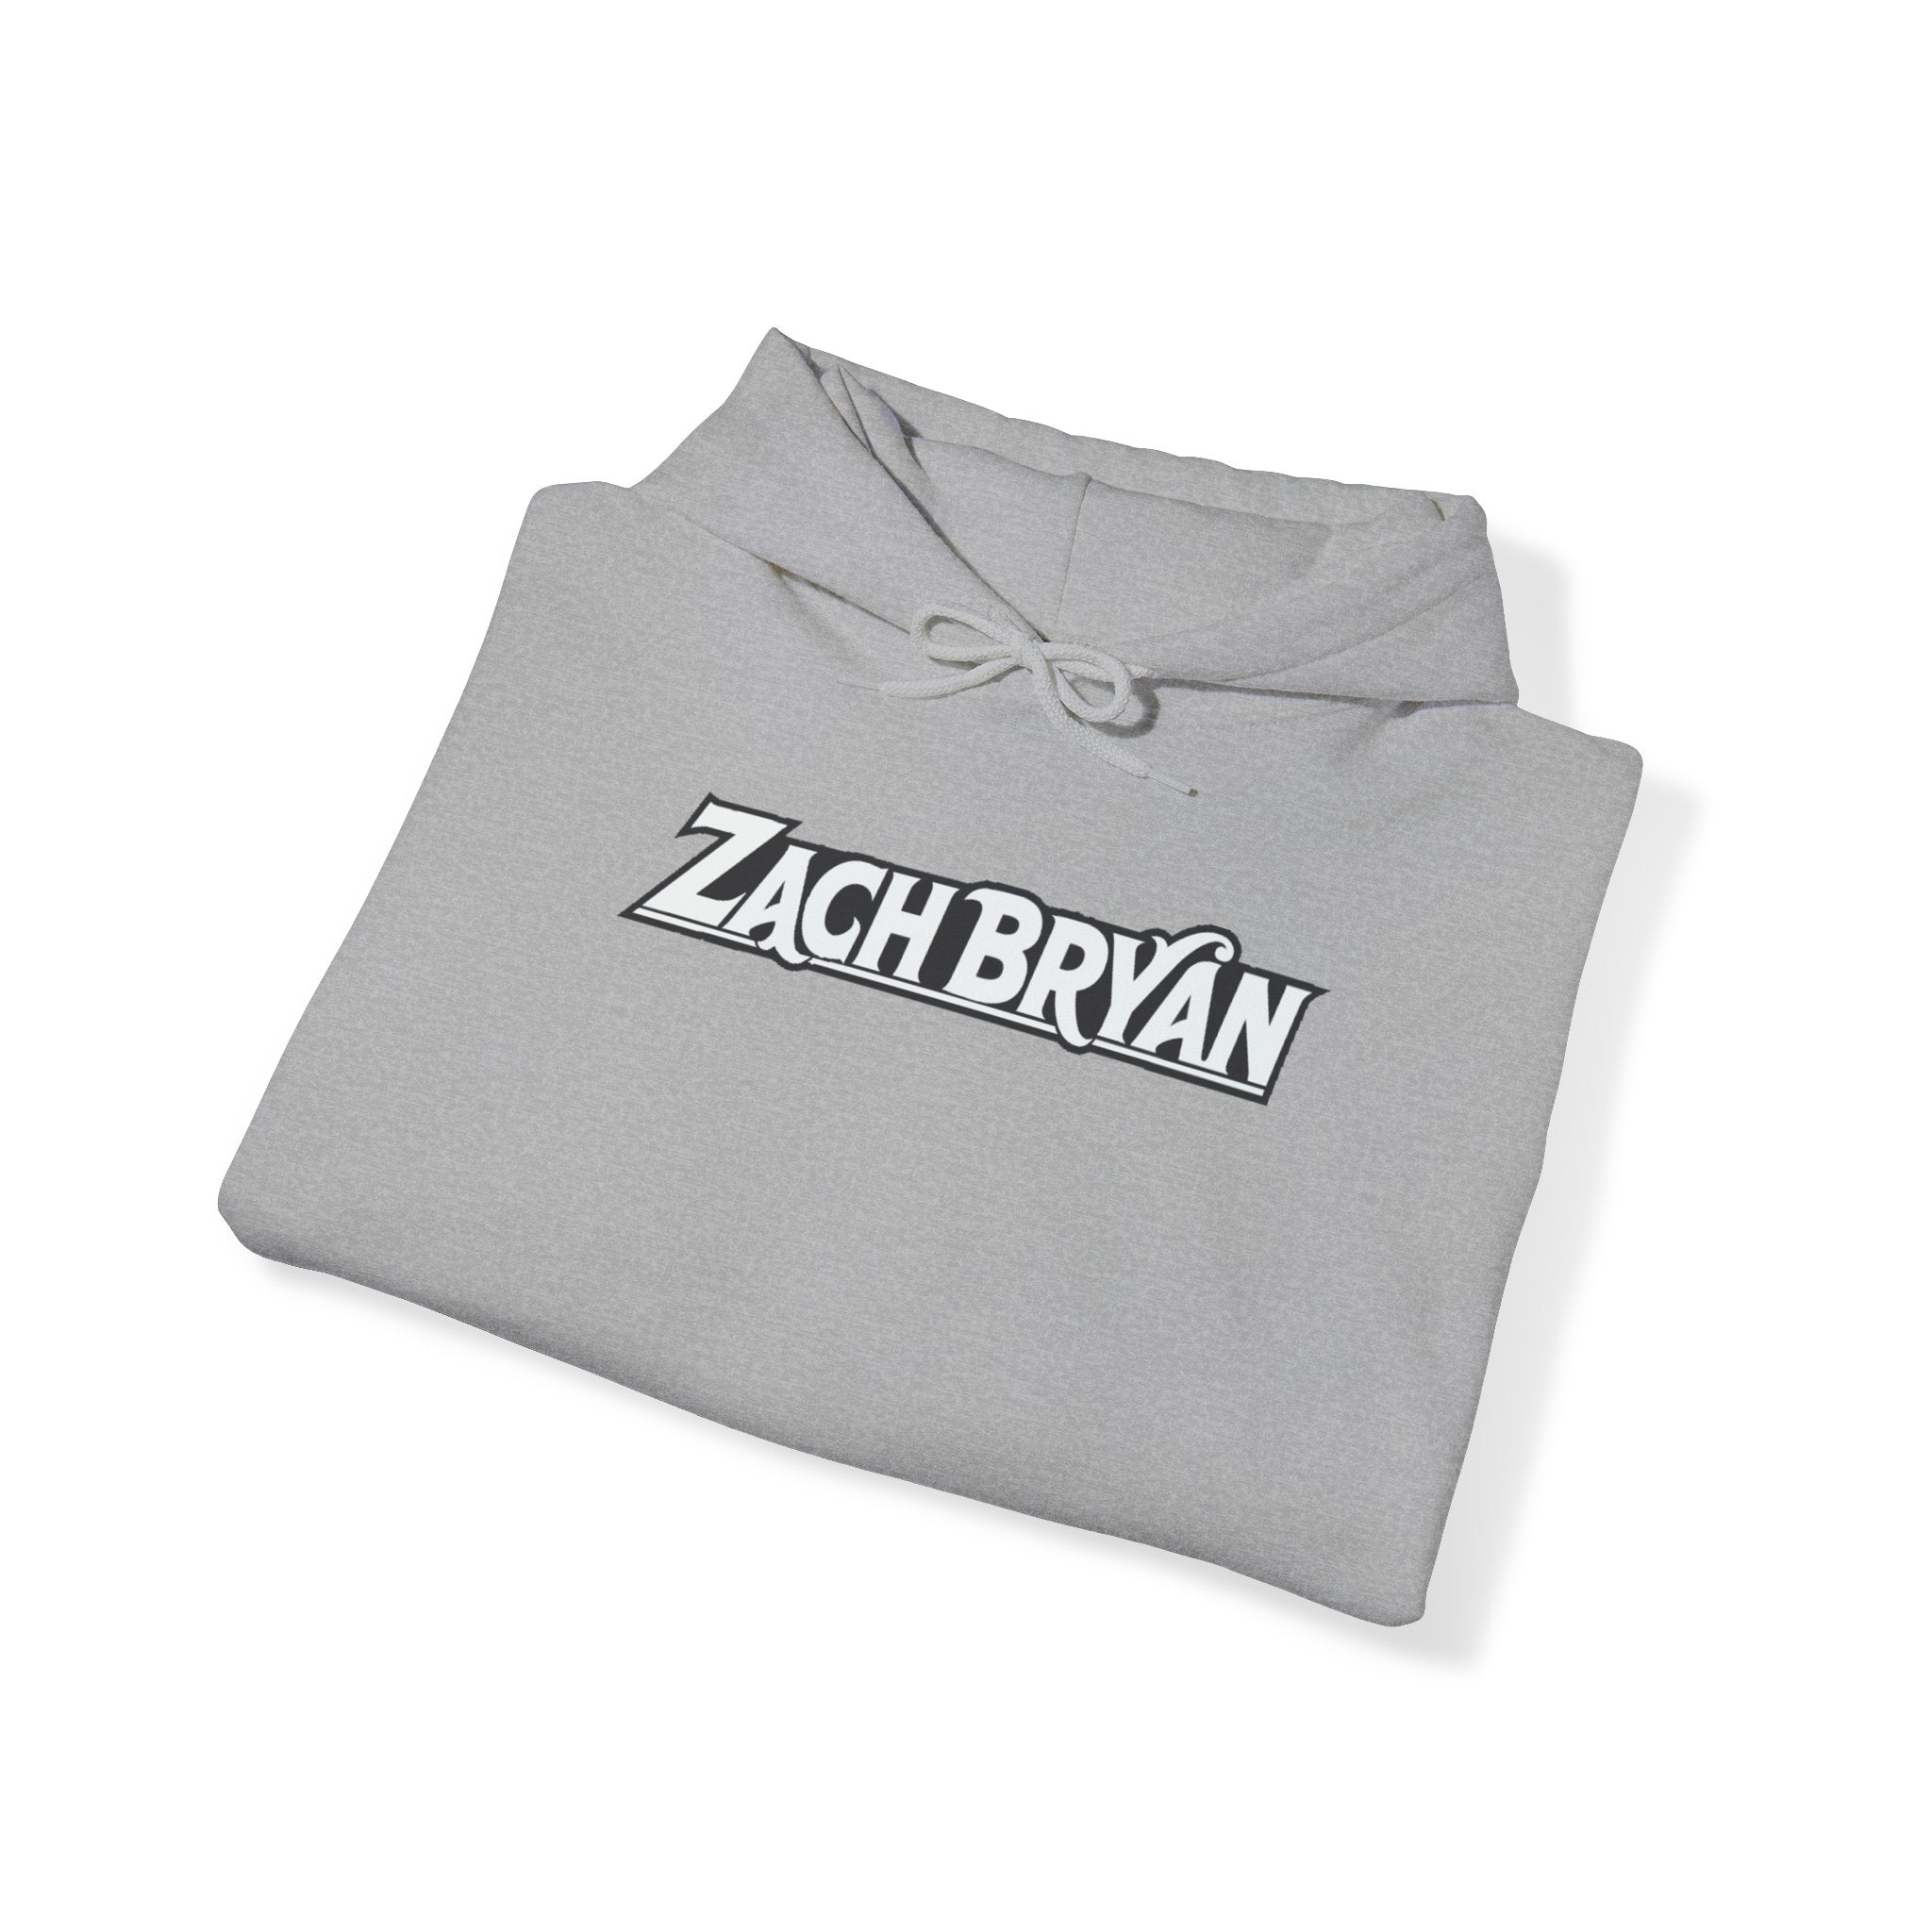 Zach Bryan Hoodie 1 | Zach Bryan